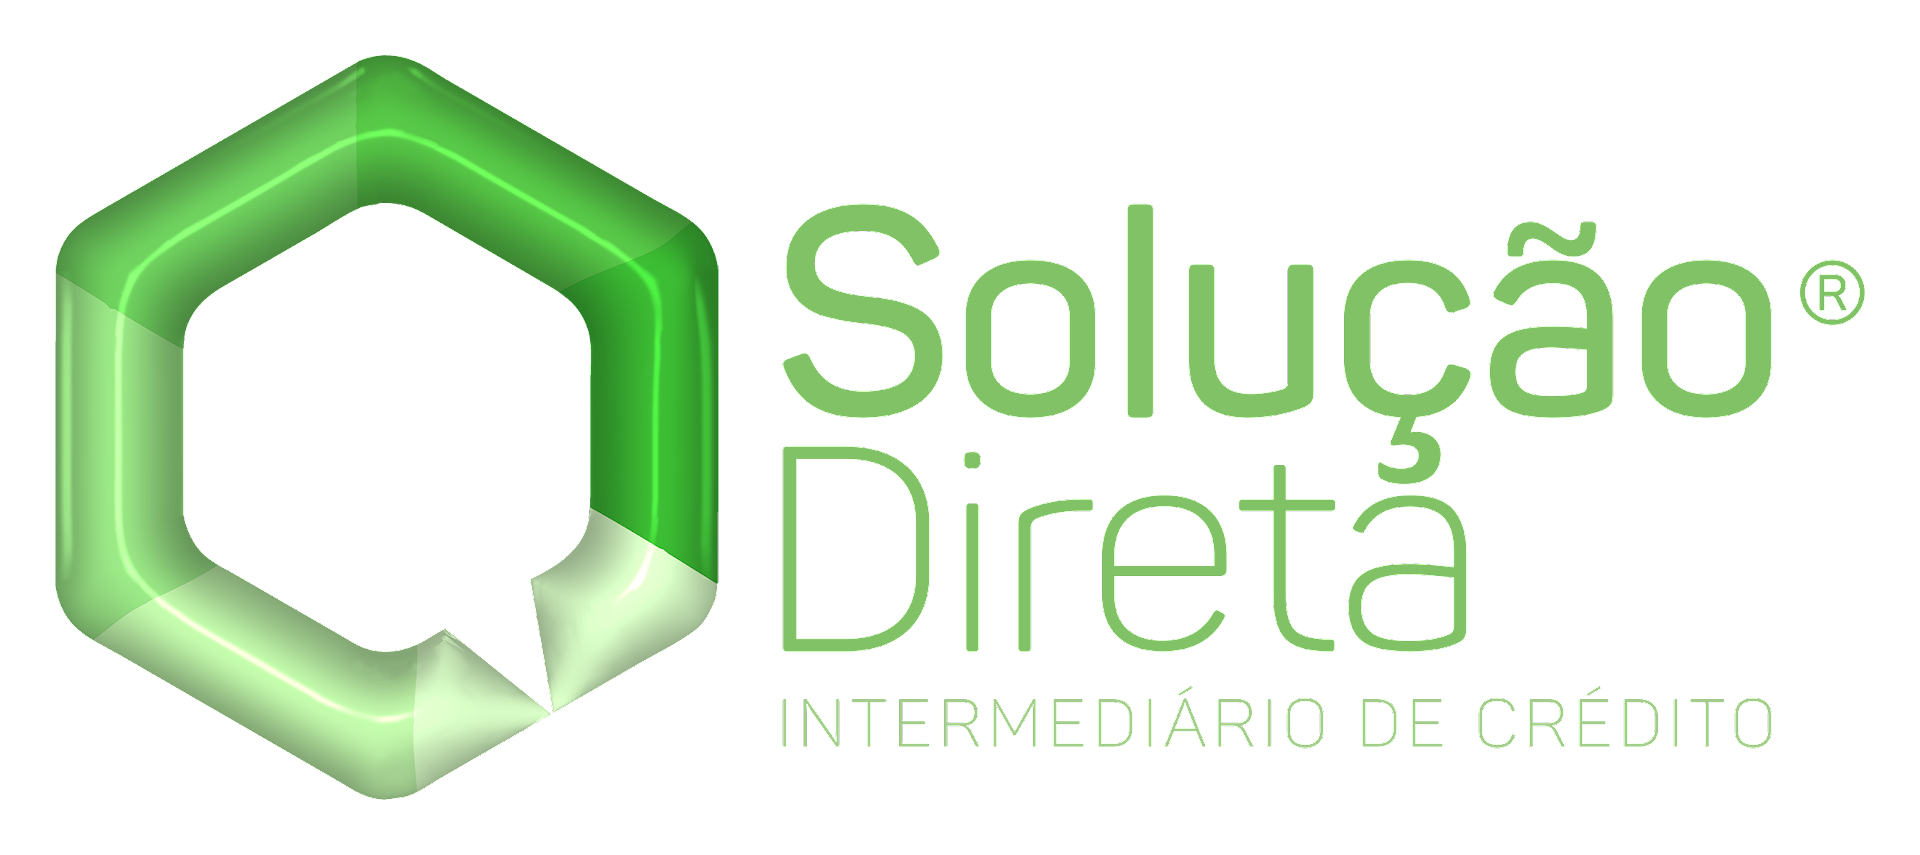 SD_Logotipo_3D_animac╠ºa╠âo